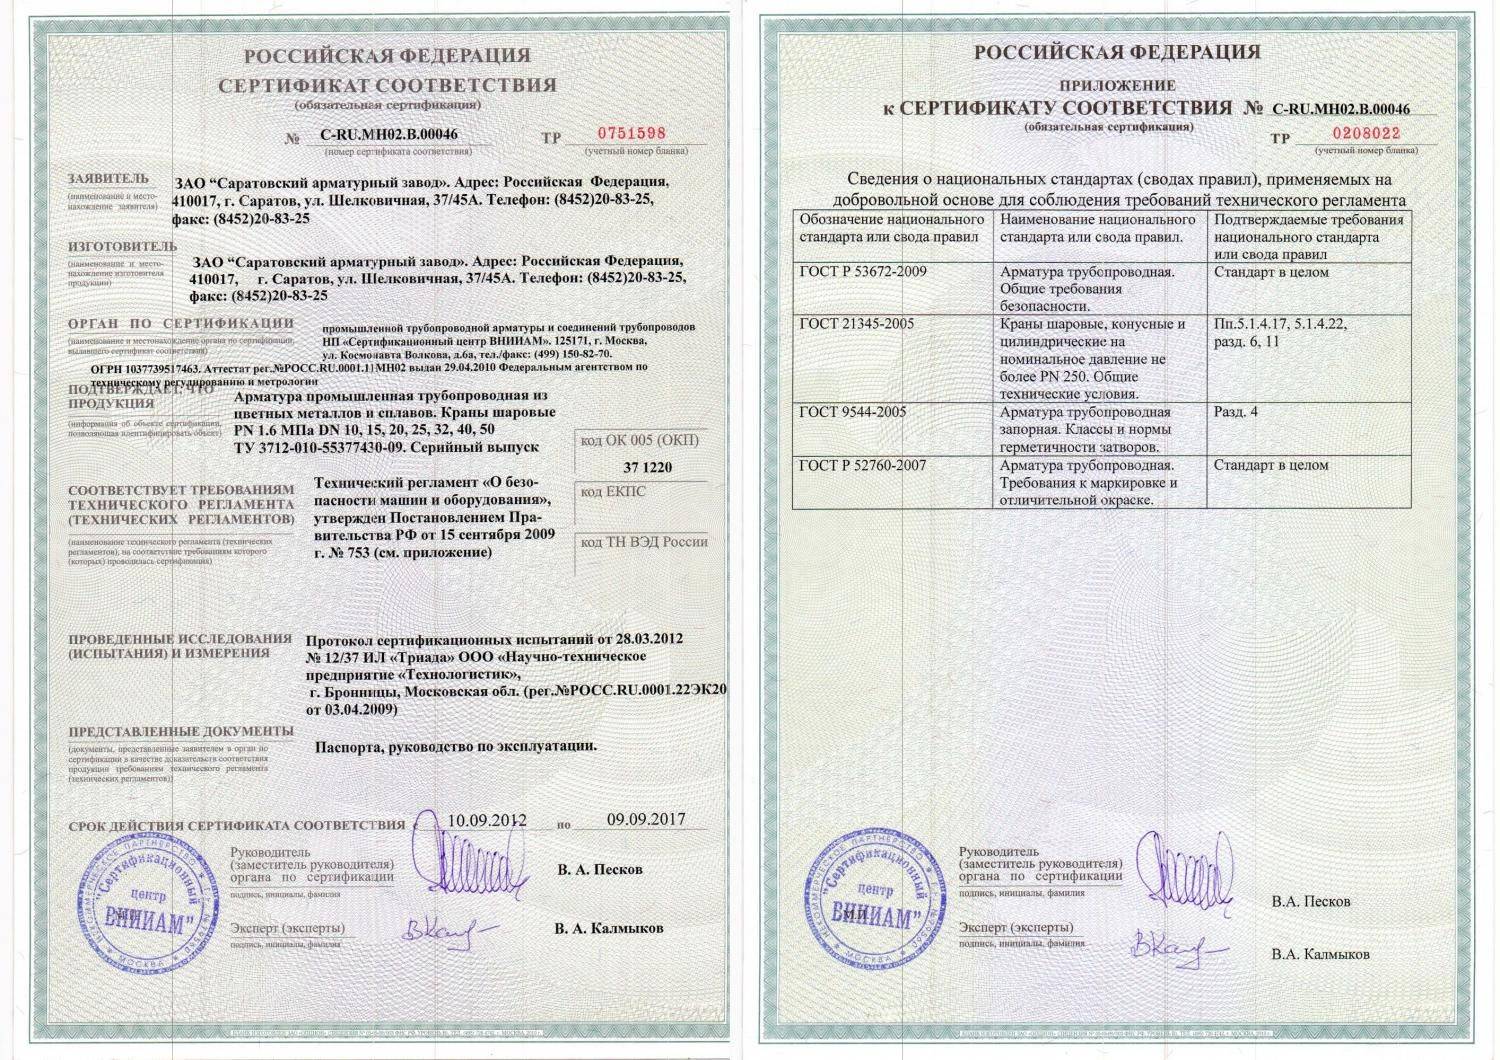 Сертификация продукции: как получить необходимые сертификаты, декларации, сгр